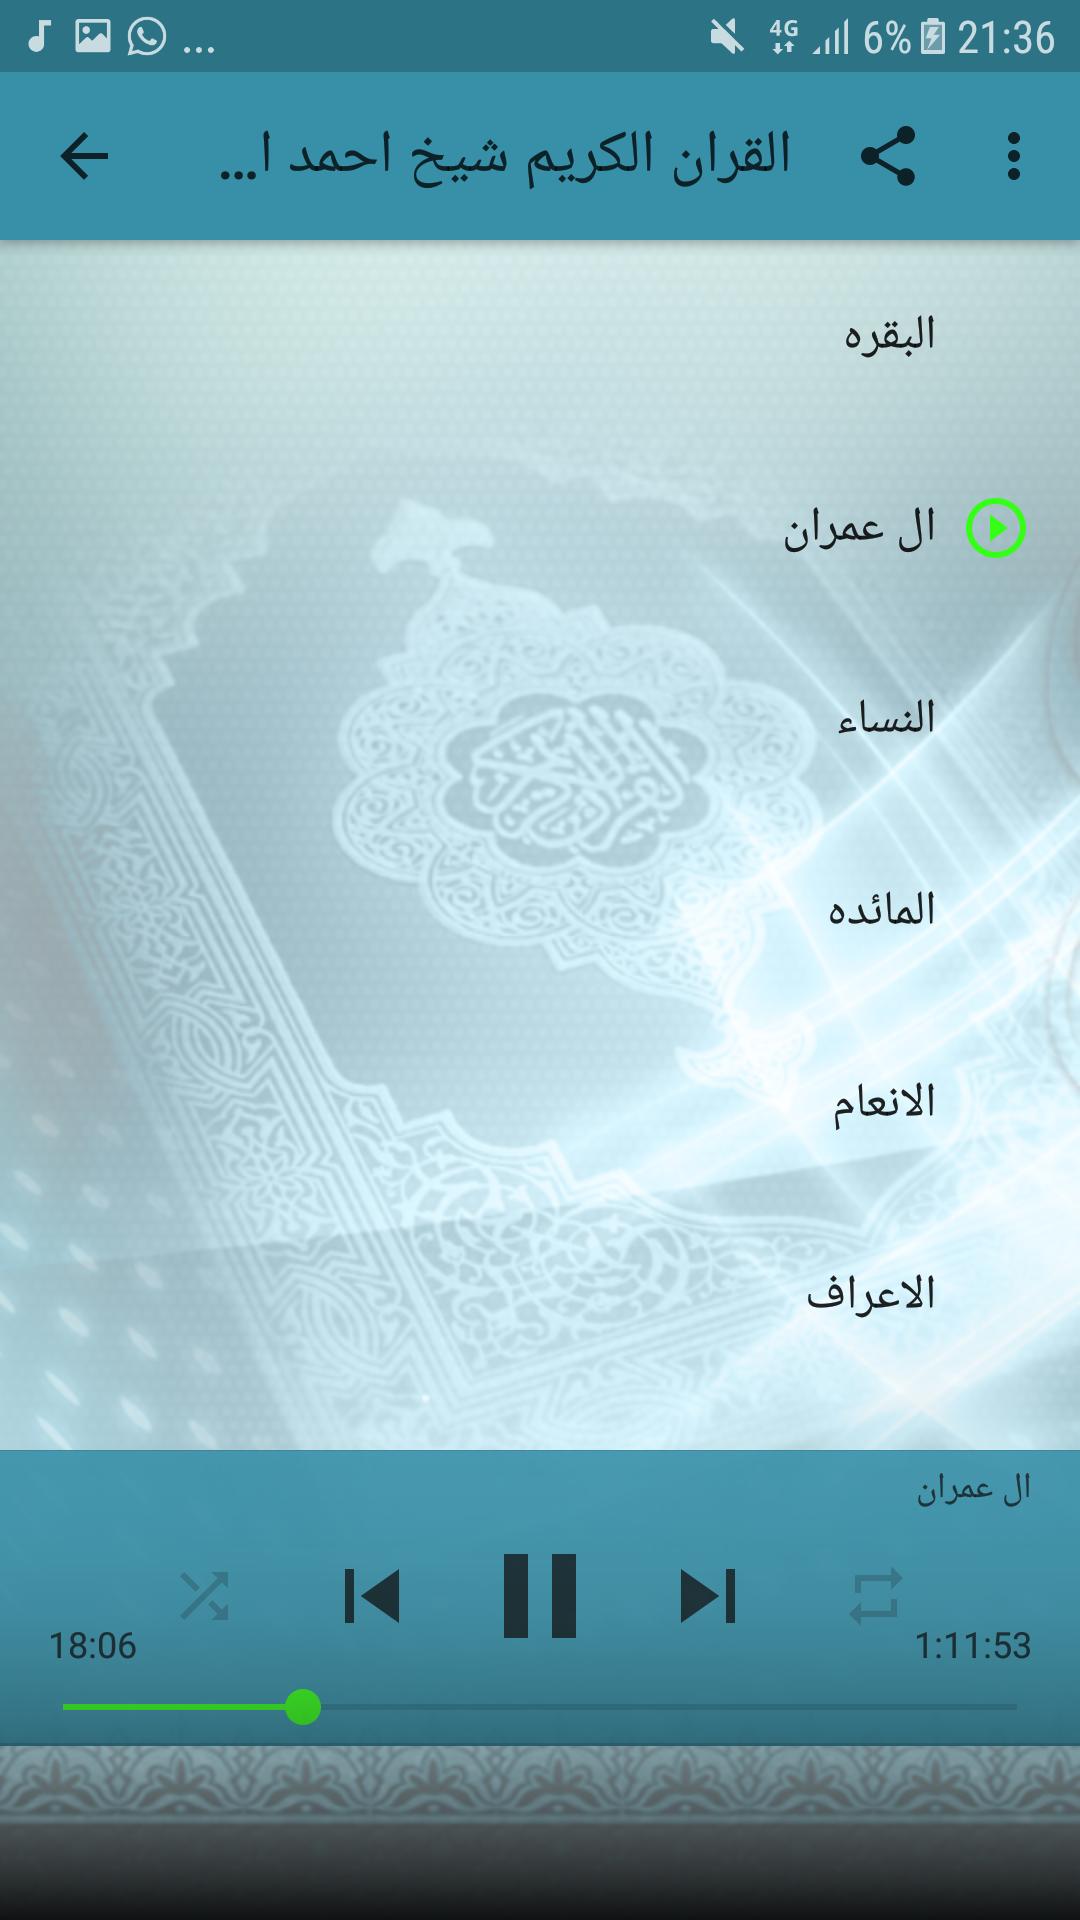 احمد العجمي قرأن كامل بالانترنت بجودة عالية جدا For Android